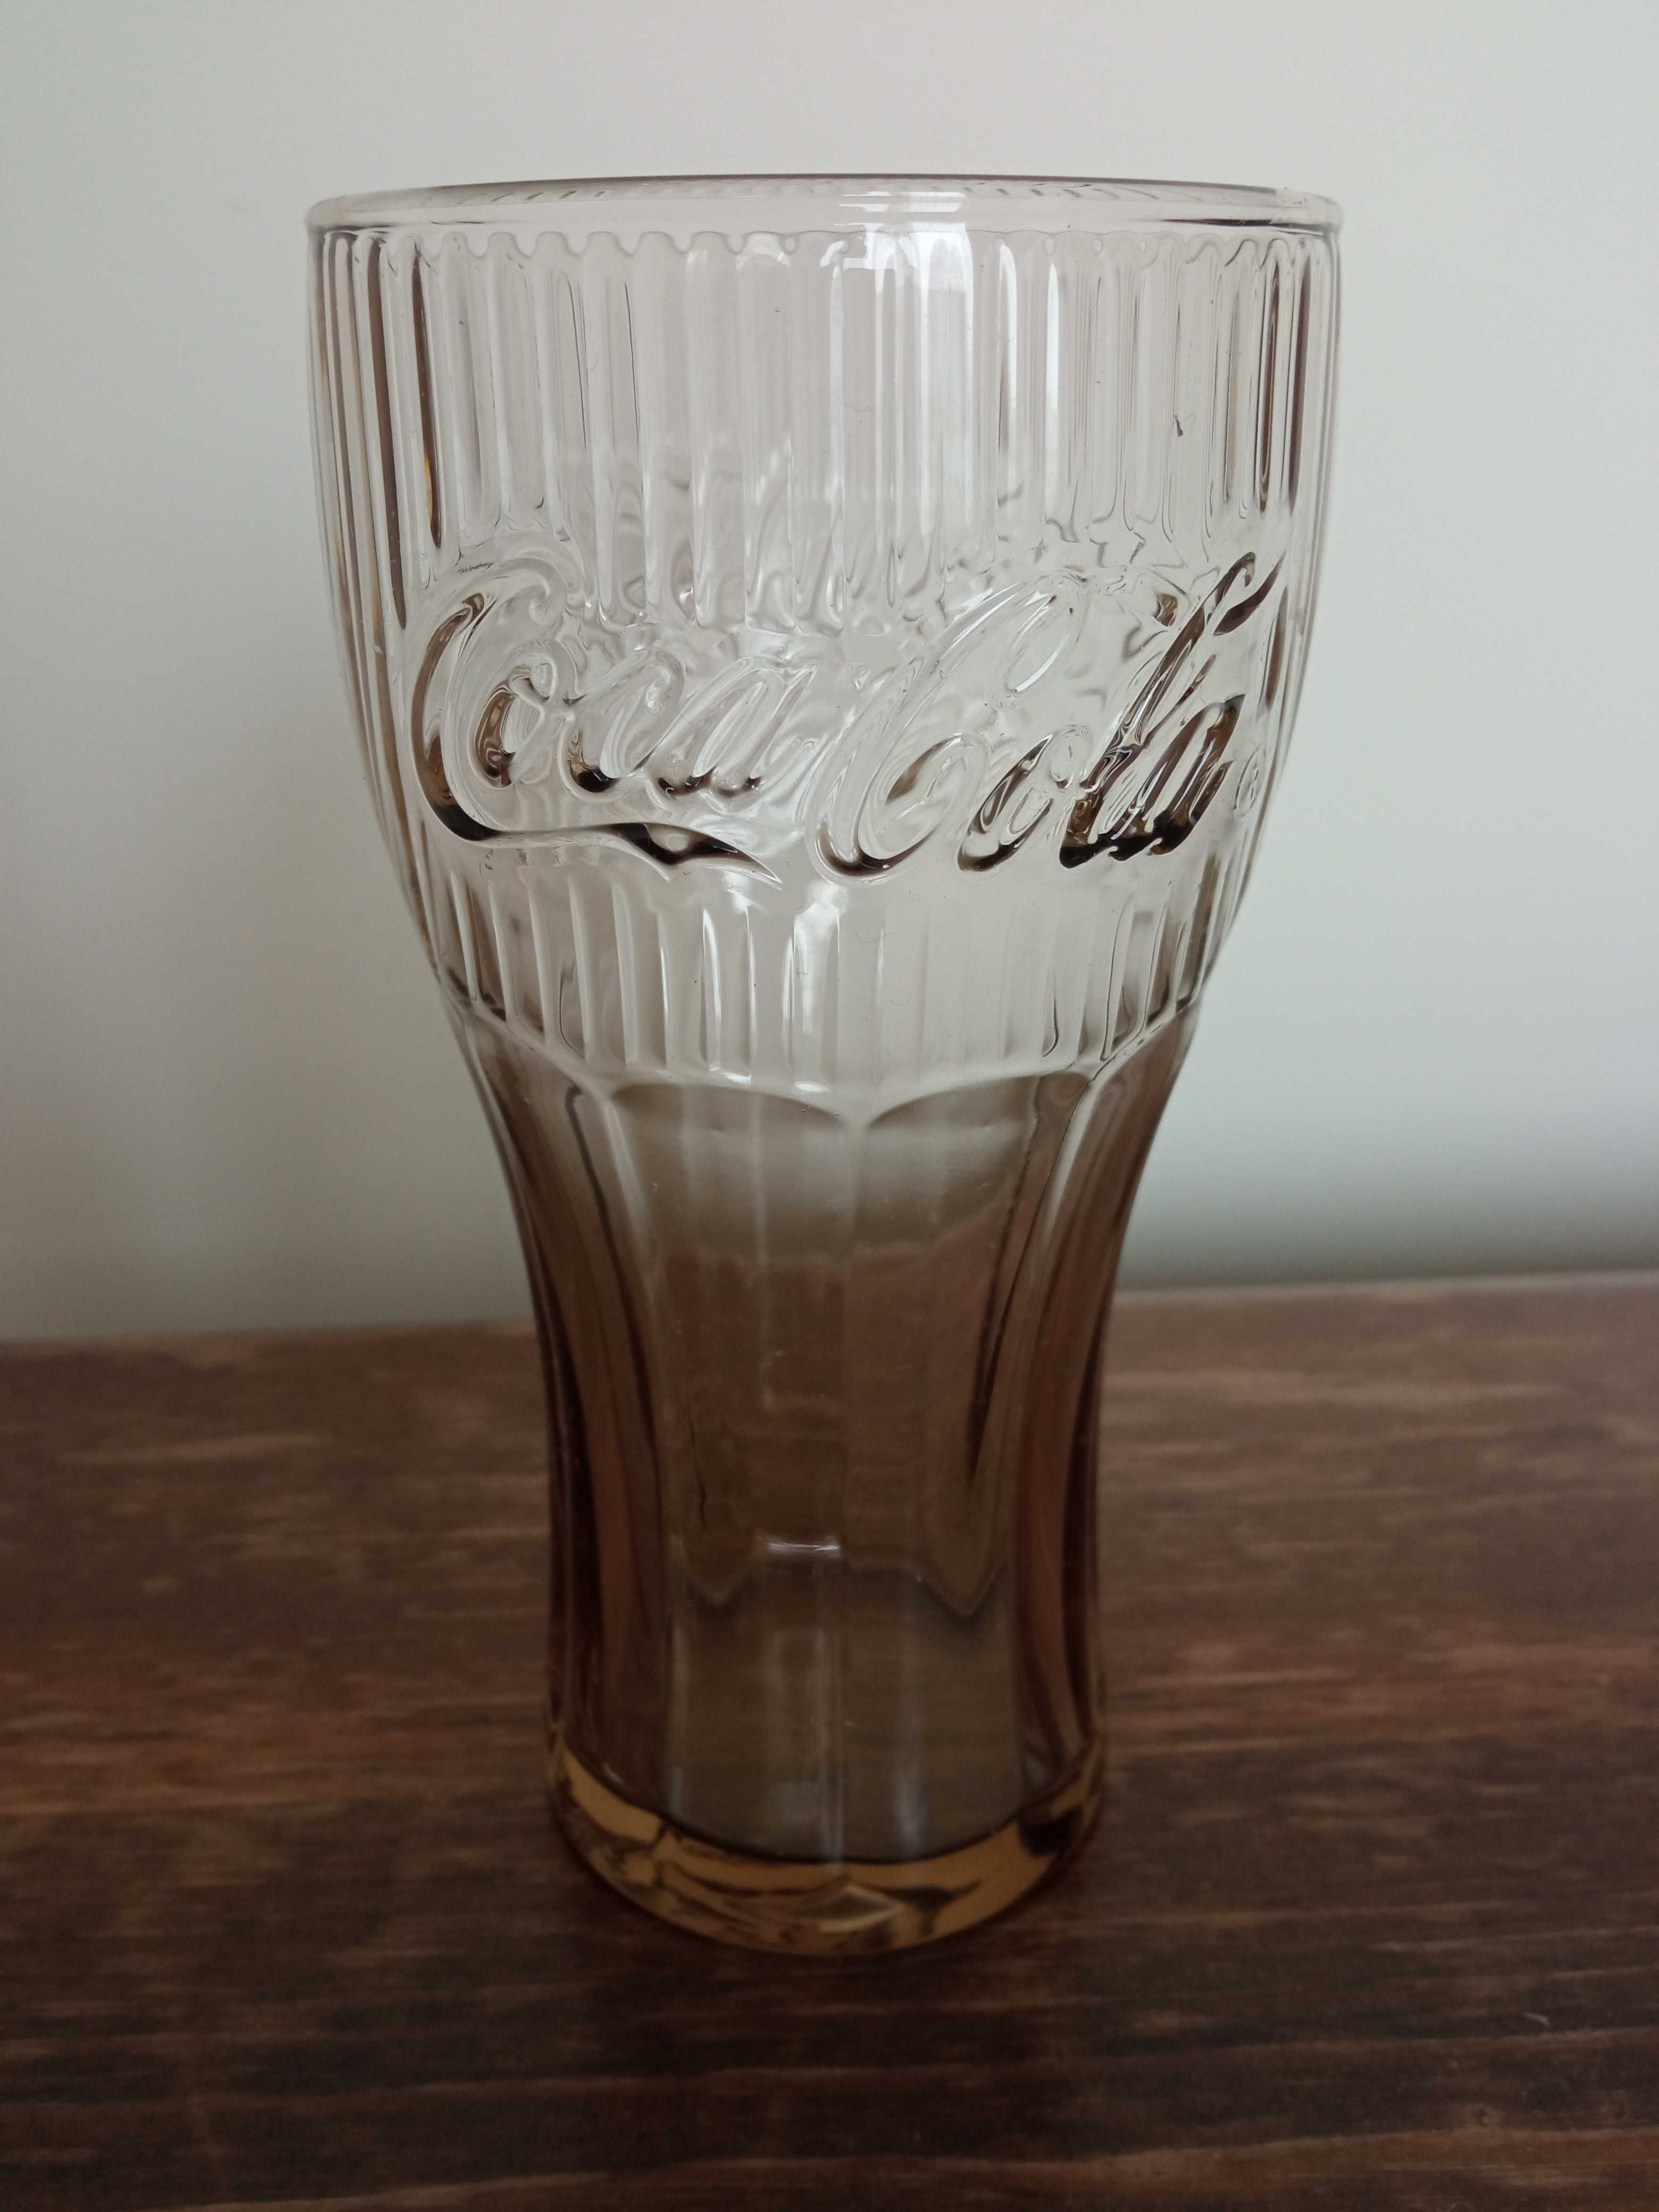 Szklanka Coca Cola McDonald's 2021 szara Szklanka kolekcjonerska